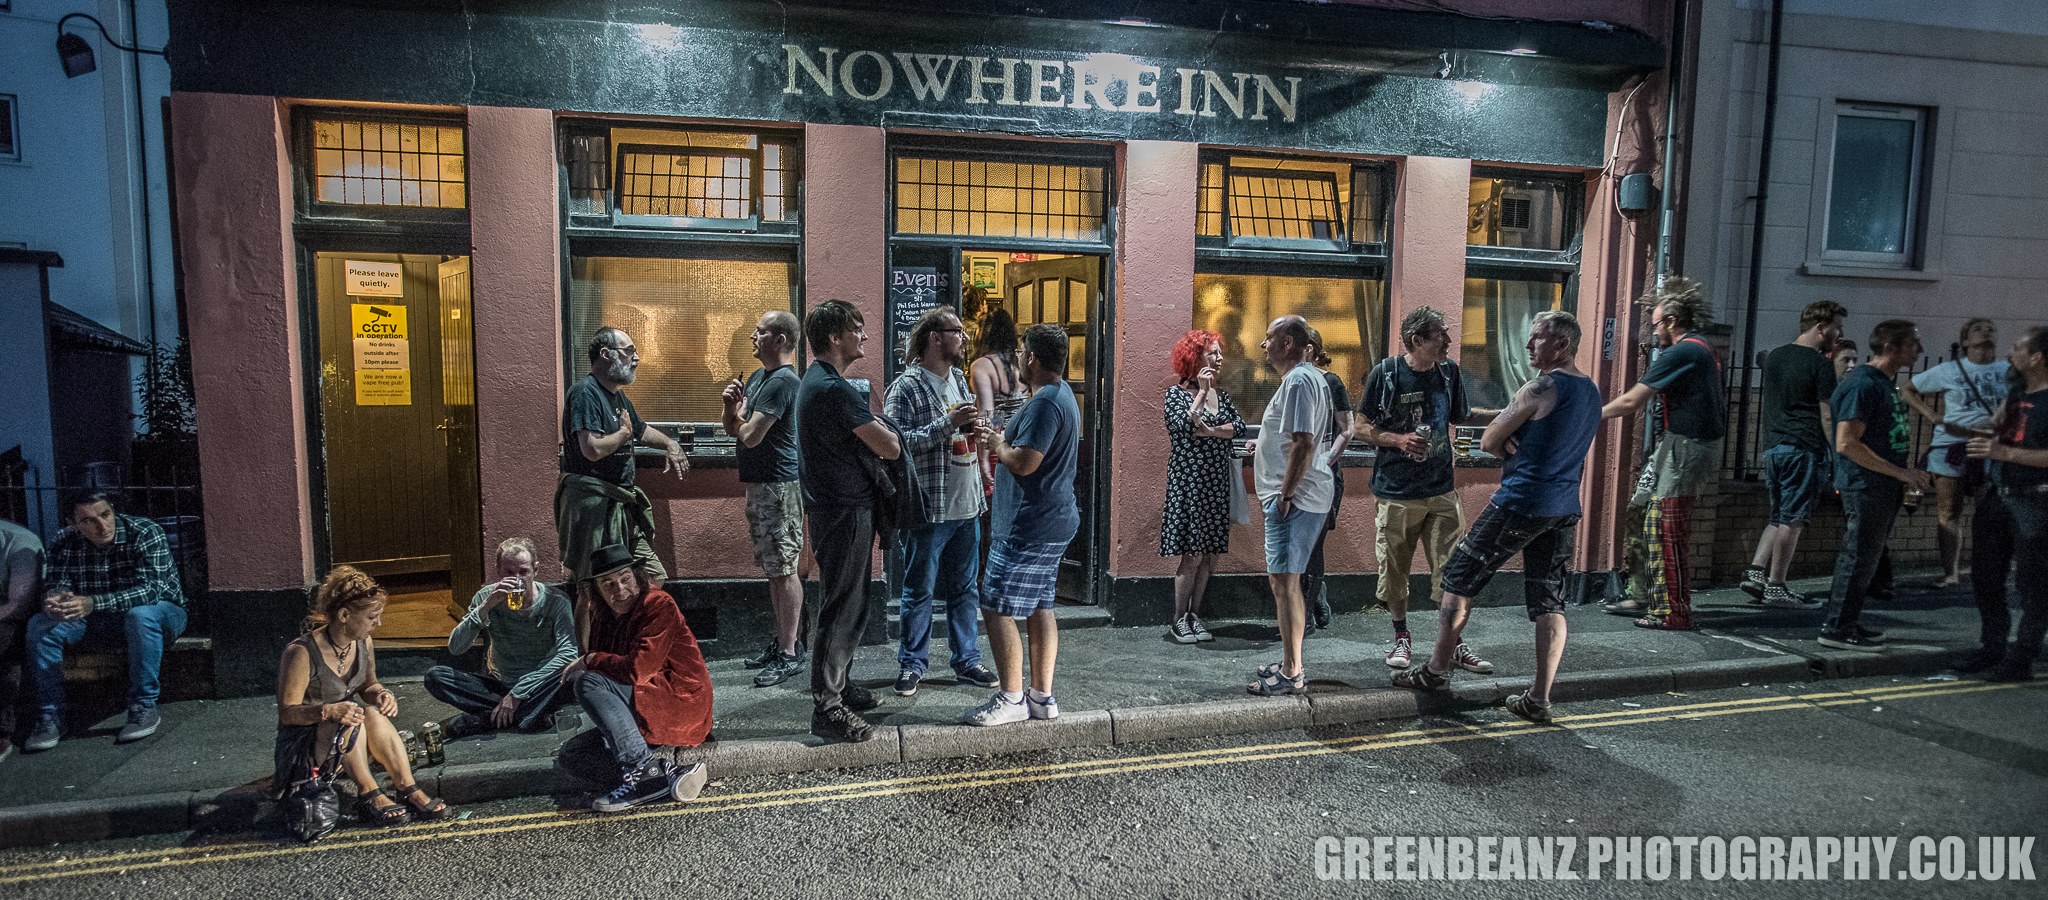 Outside The Nowhere Inn at night Phil Fest 2019